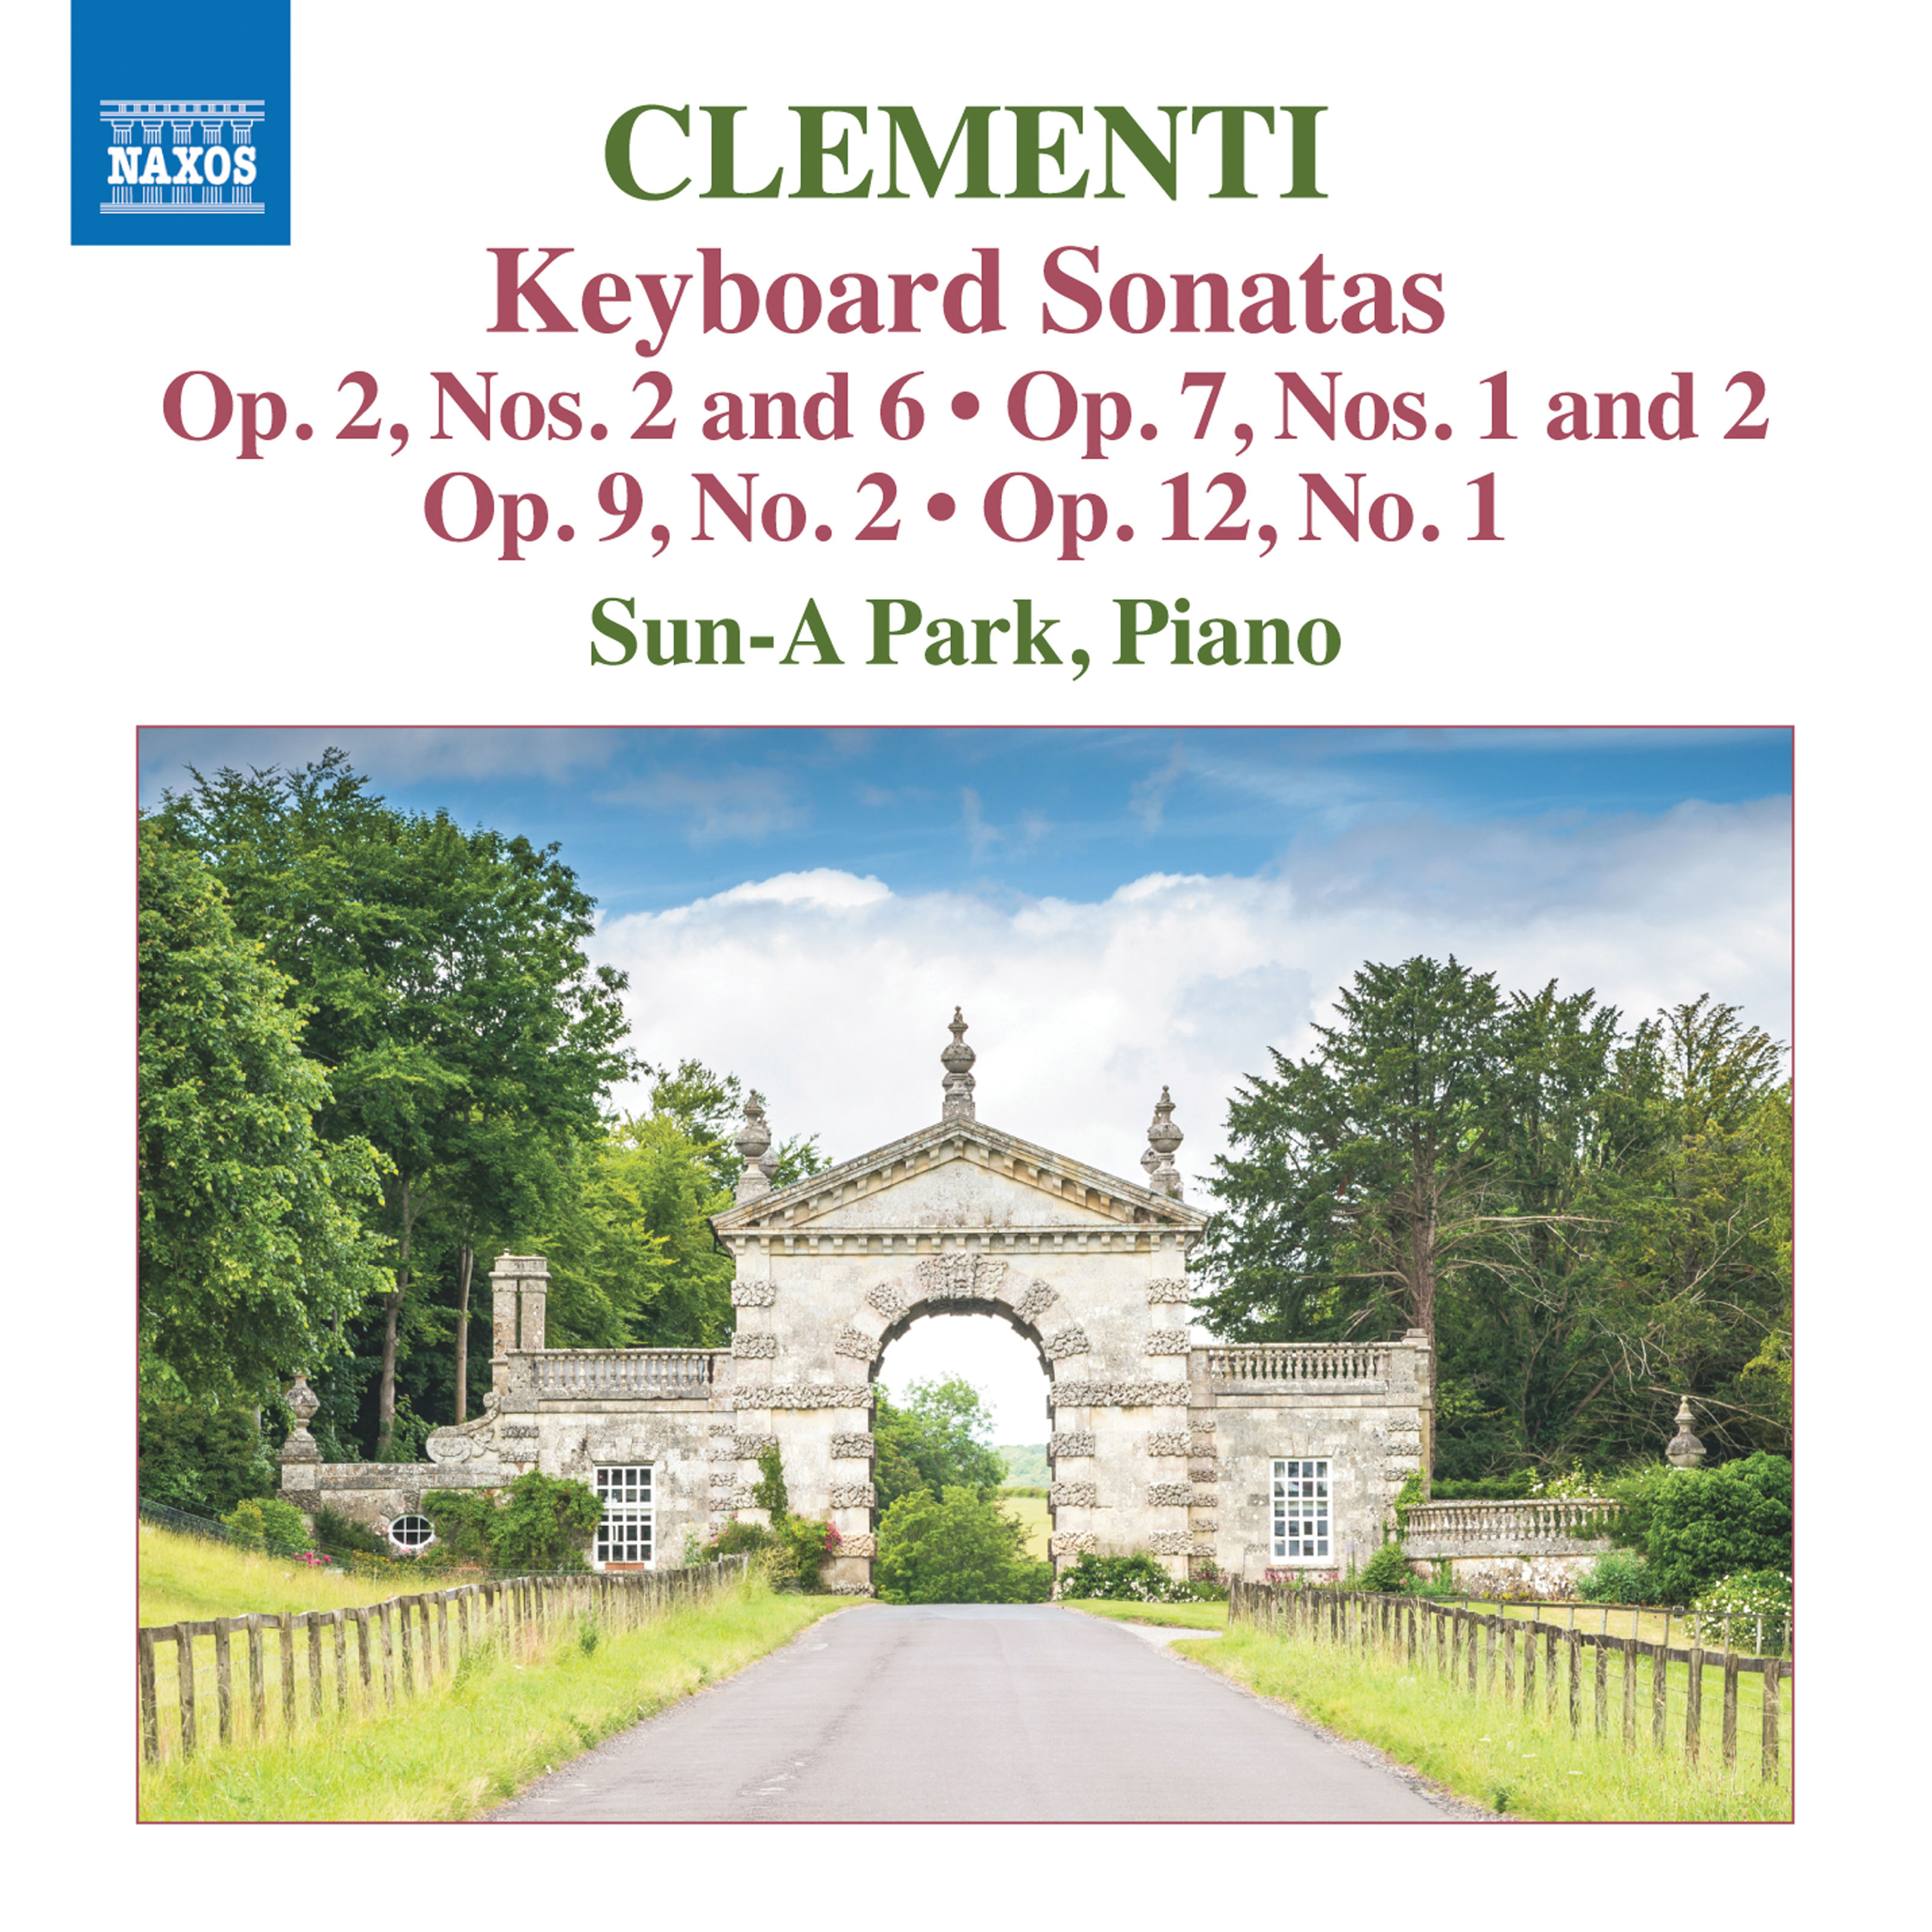 Sun-A Park – Clementi: Keyboard Sonatas (2019) [FLAC 24bit/96kHz]